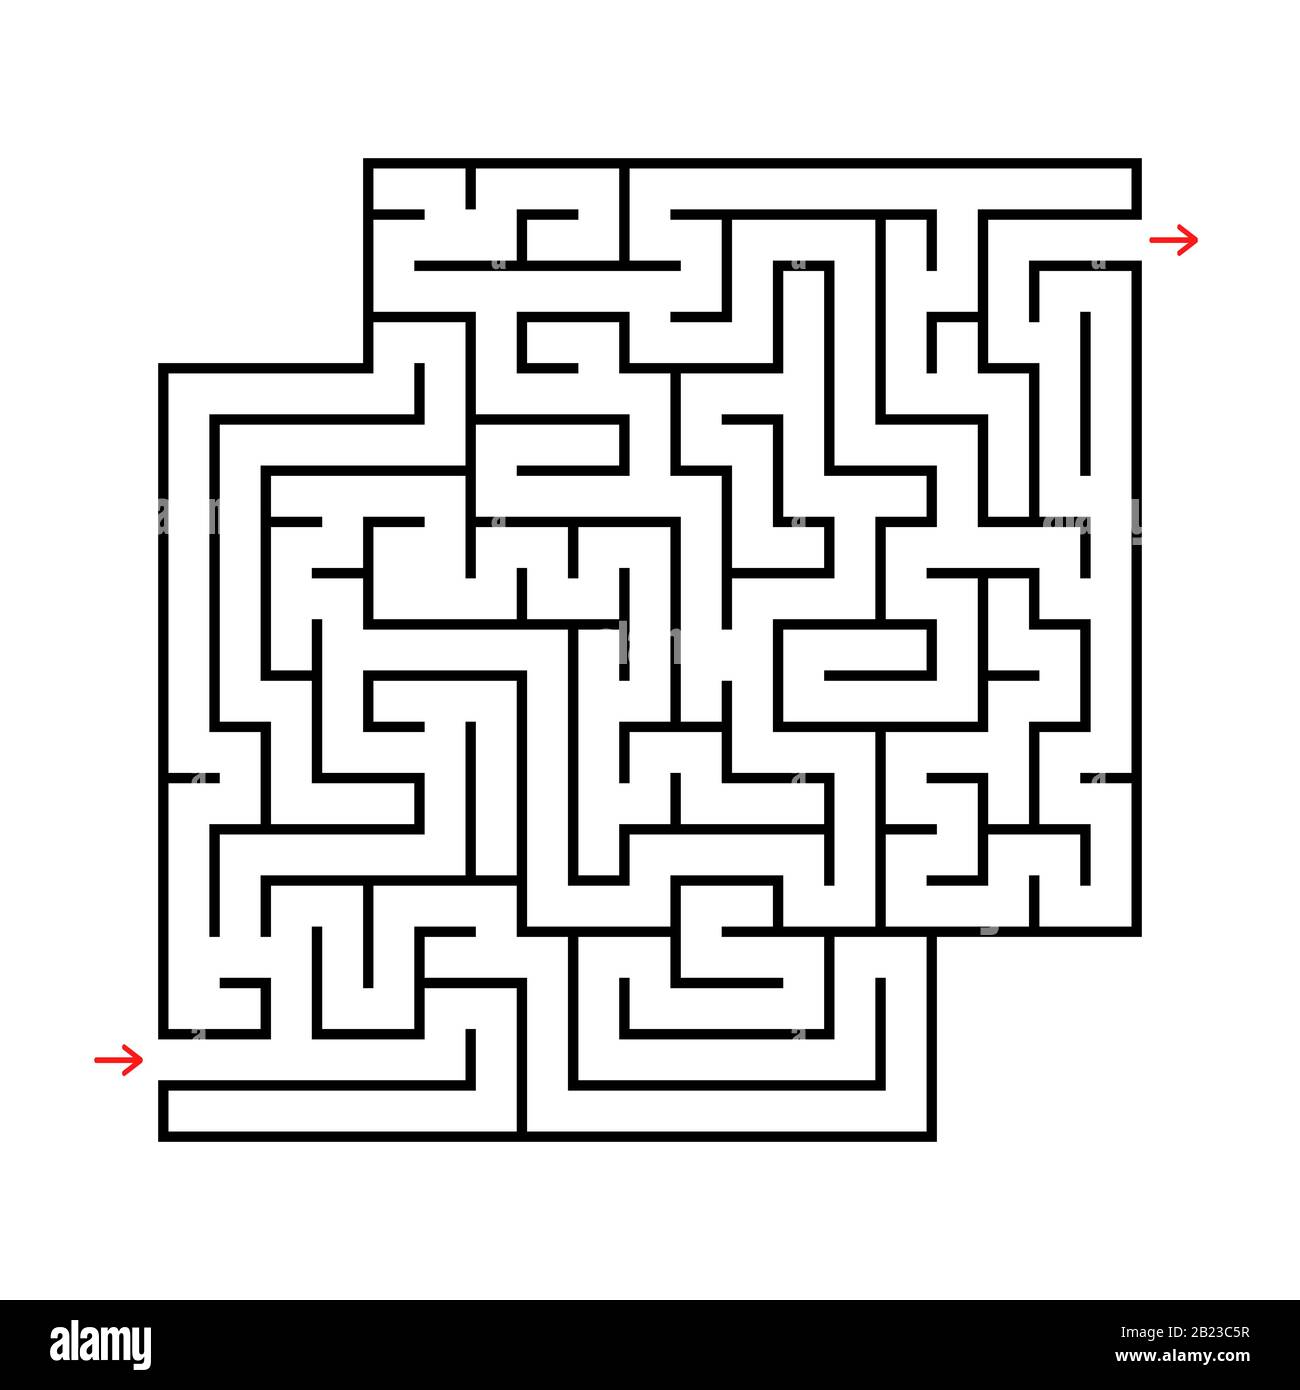 Labirinto quadrato astratto con ingresso e uscita. Semplice immagine vettoriale piatta isolata su sfondo bianco. Con un luogo per i disegni. Illustrazione Vettoriale